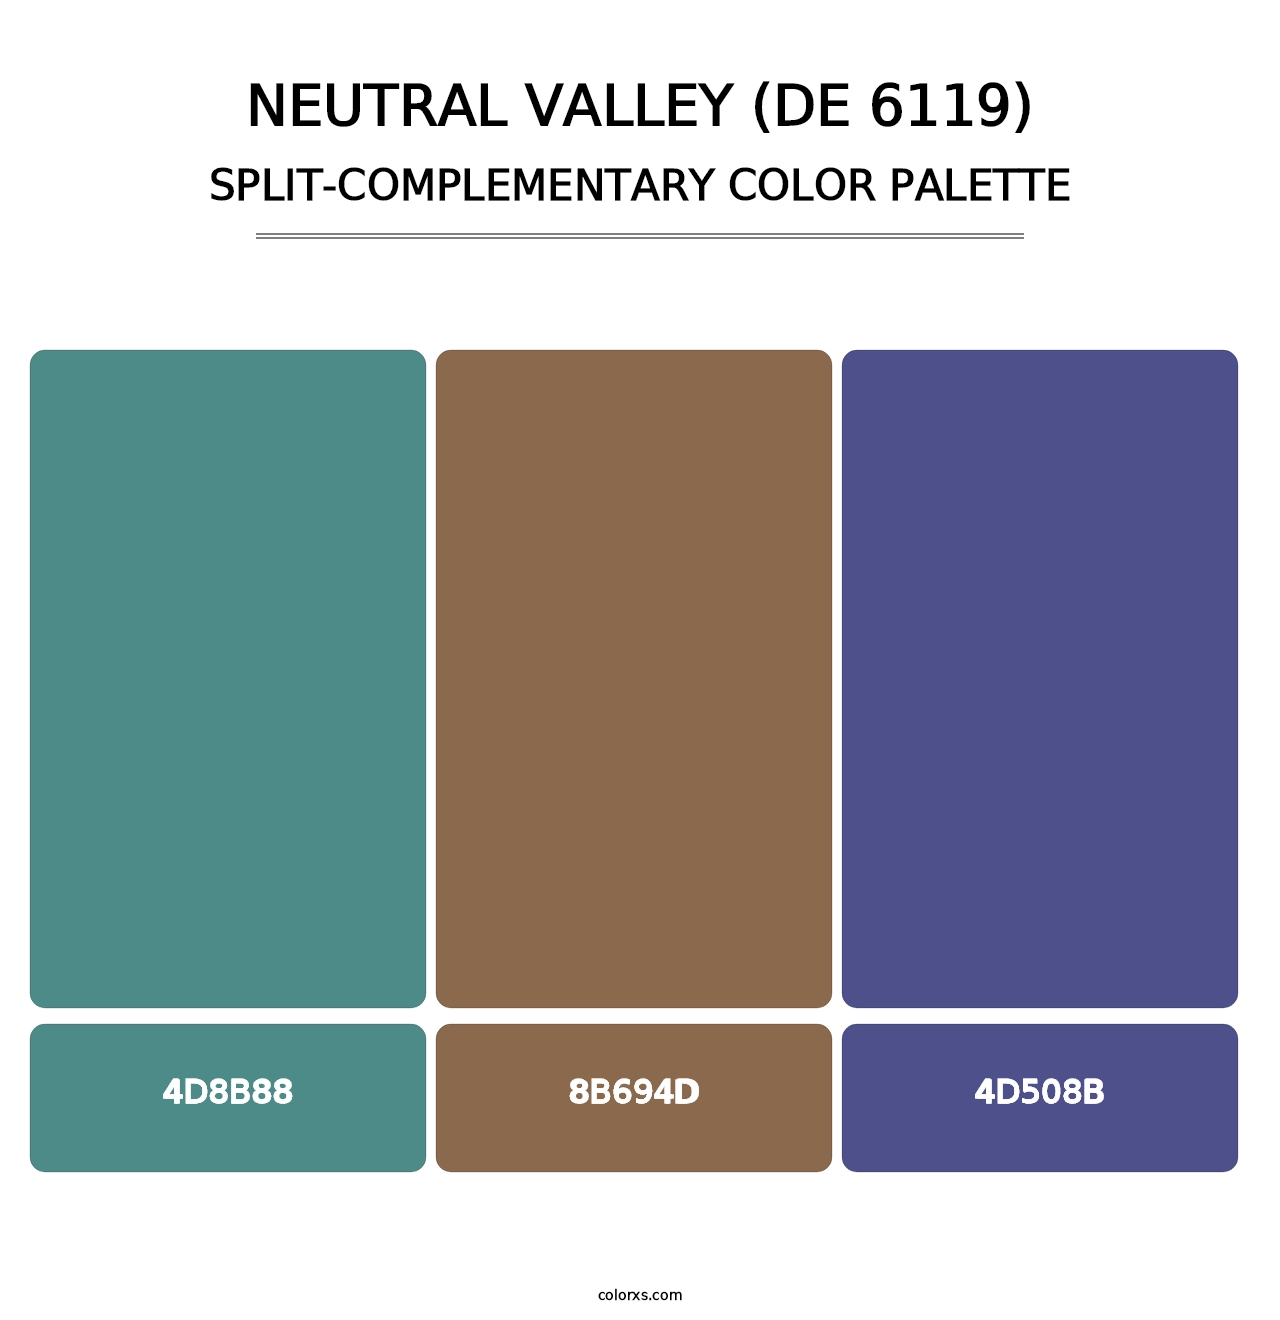 Neutral Valley (DE 6119) - Split-Complementary Color Palette